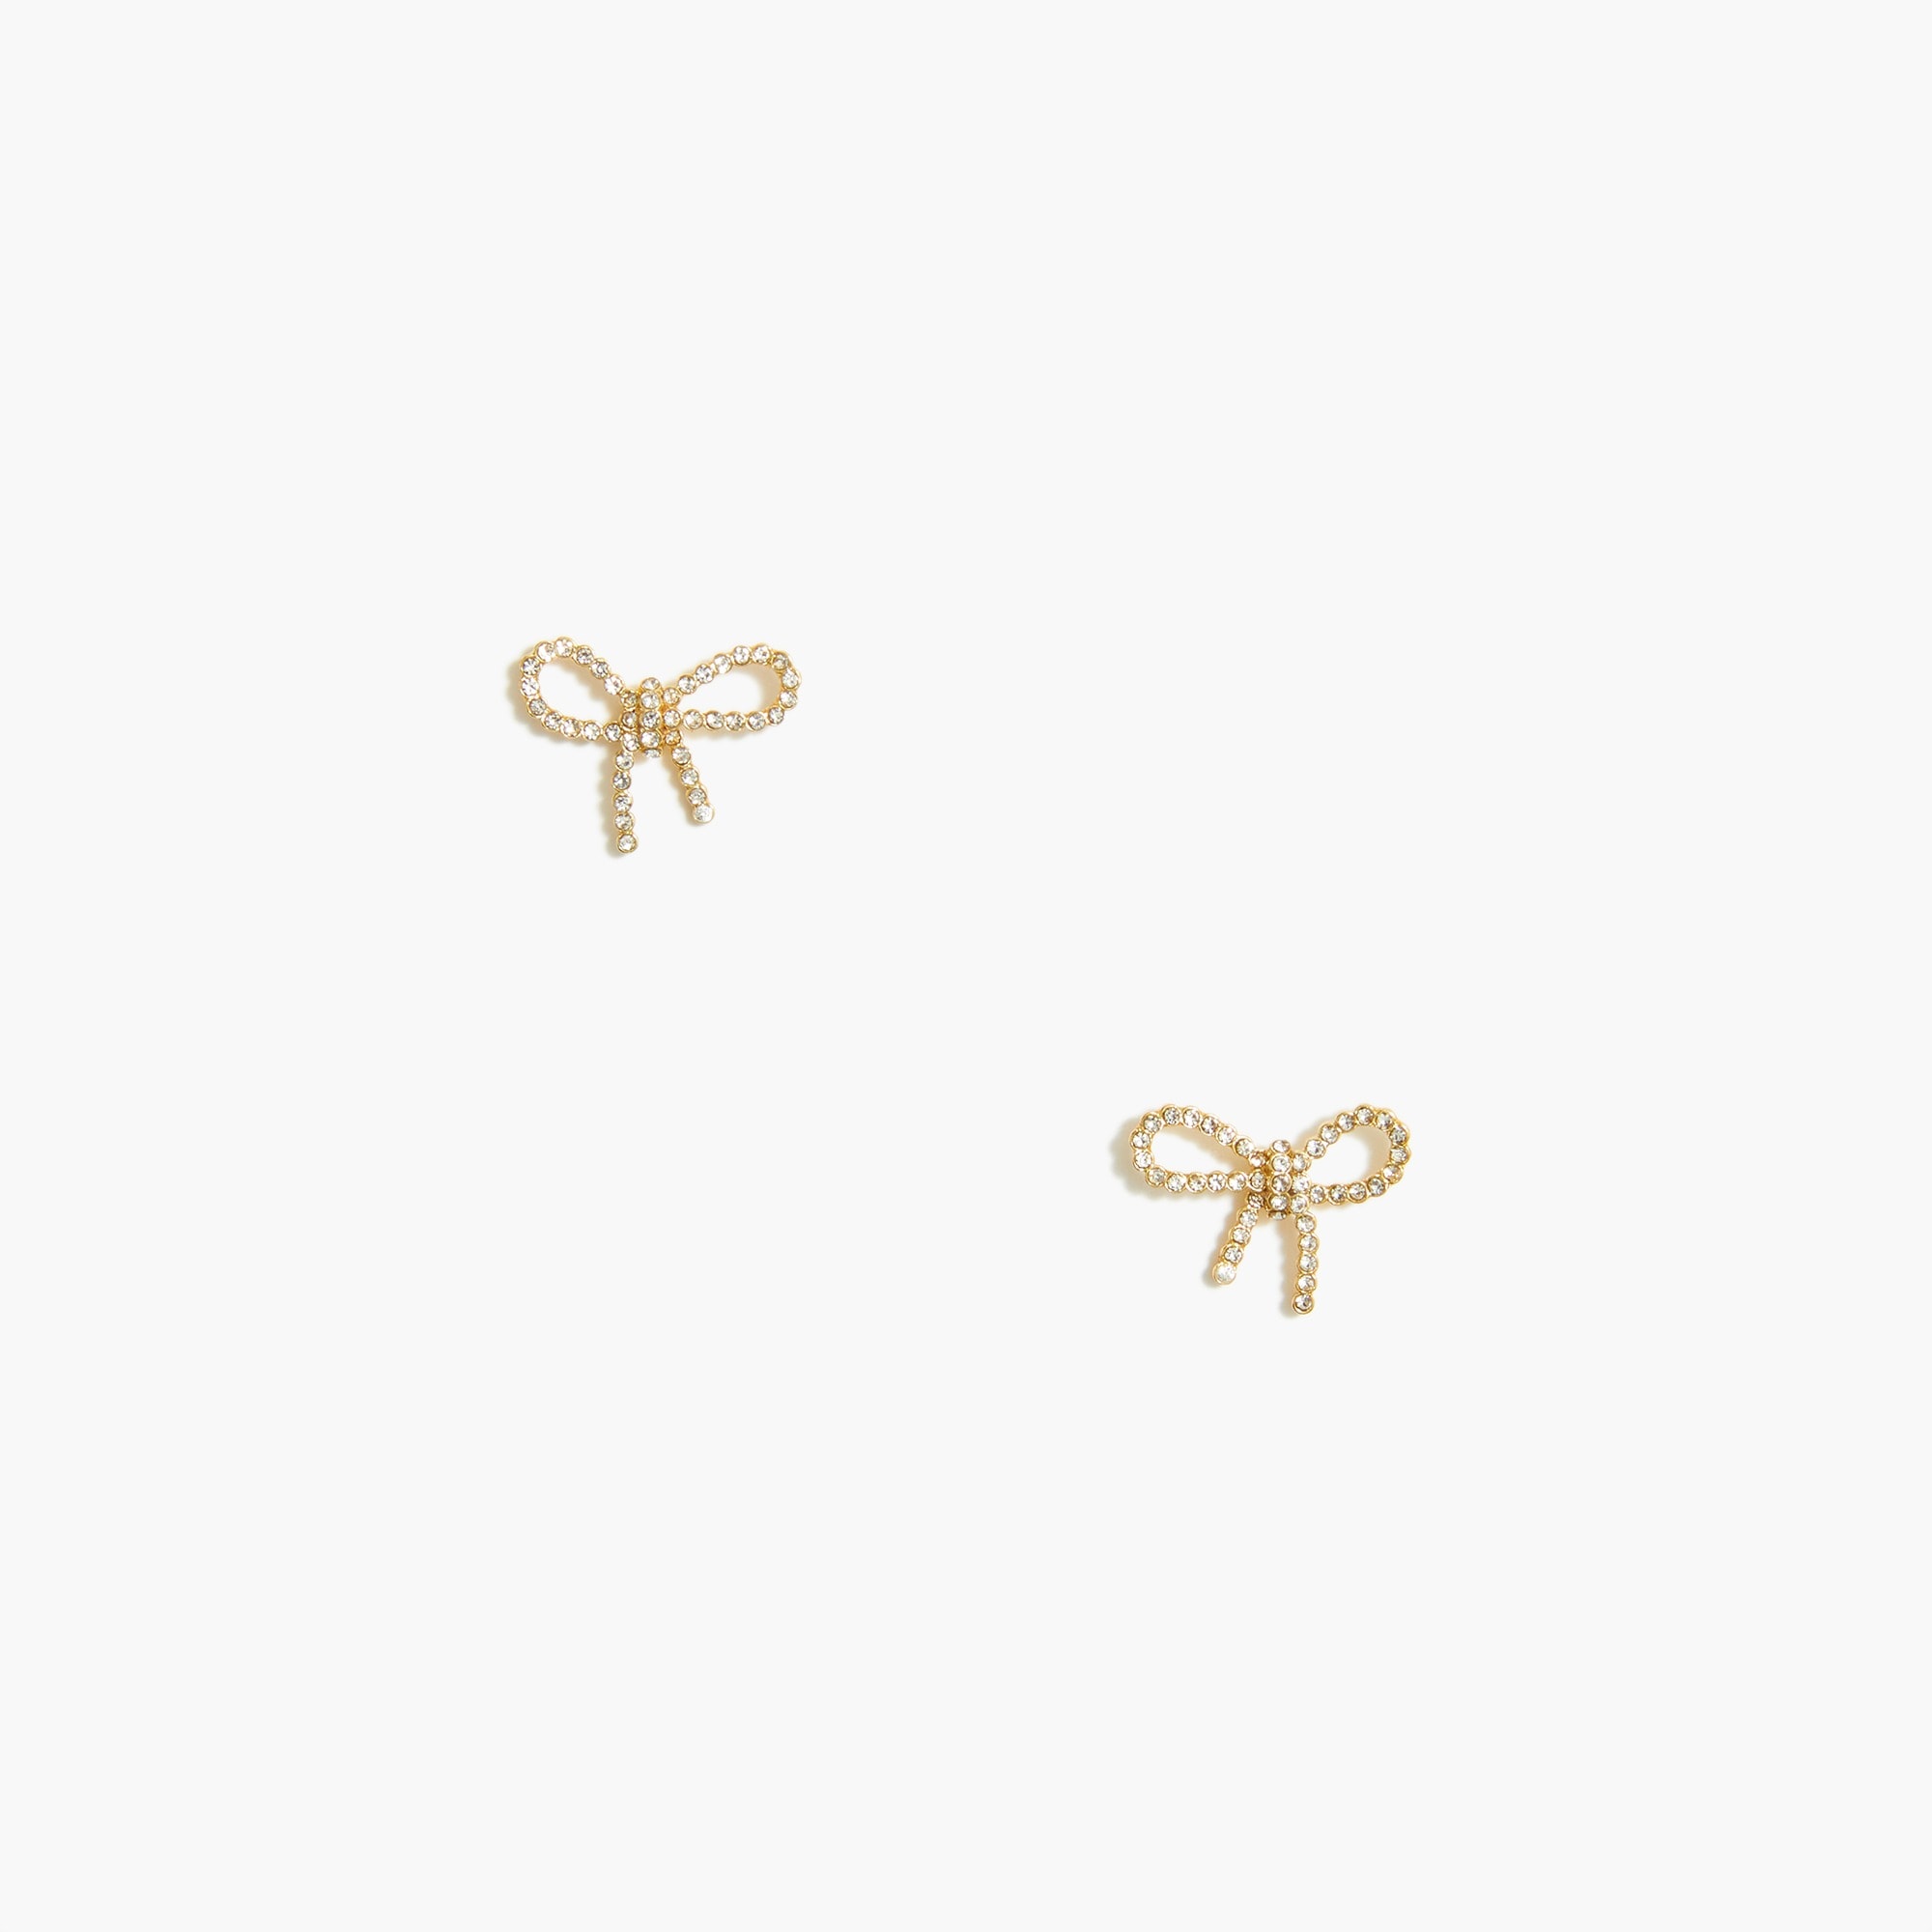 Designer Bow Earrings – Good Girls Studio